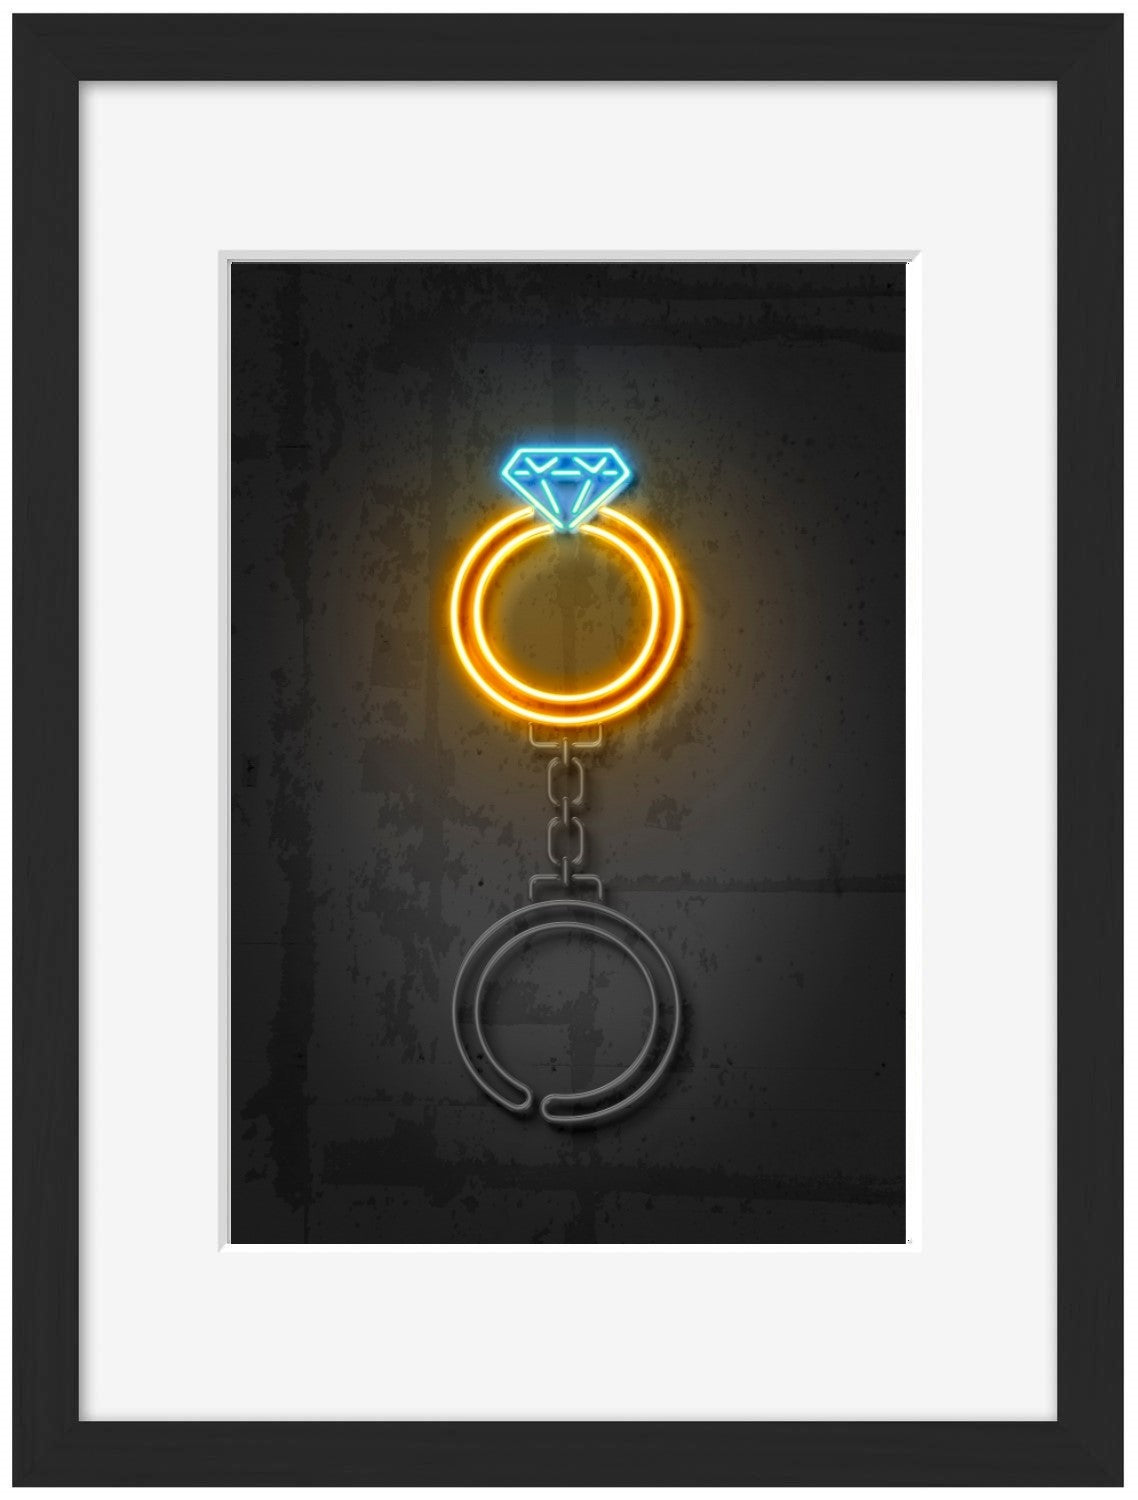 Diamond Ring-neon-art, print-Framed Print-30 x 40 cm-BLUE SHAKER